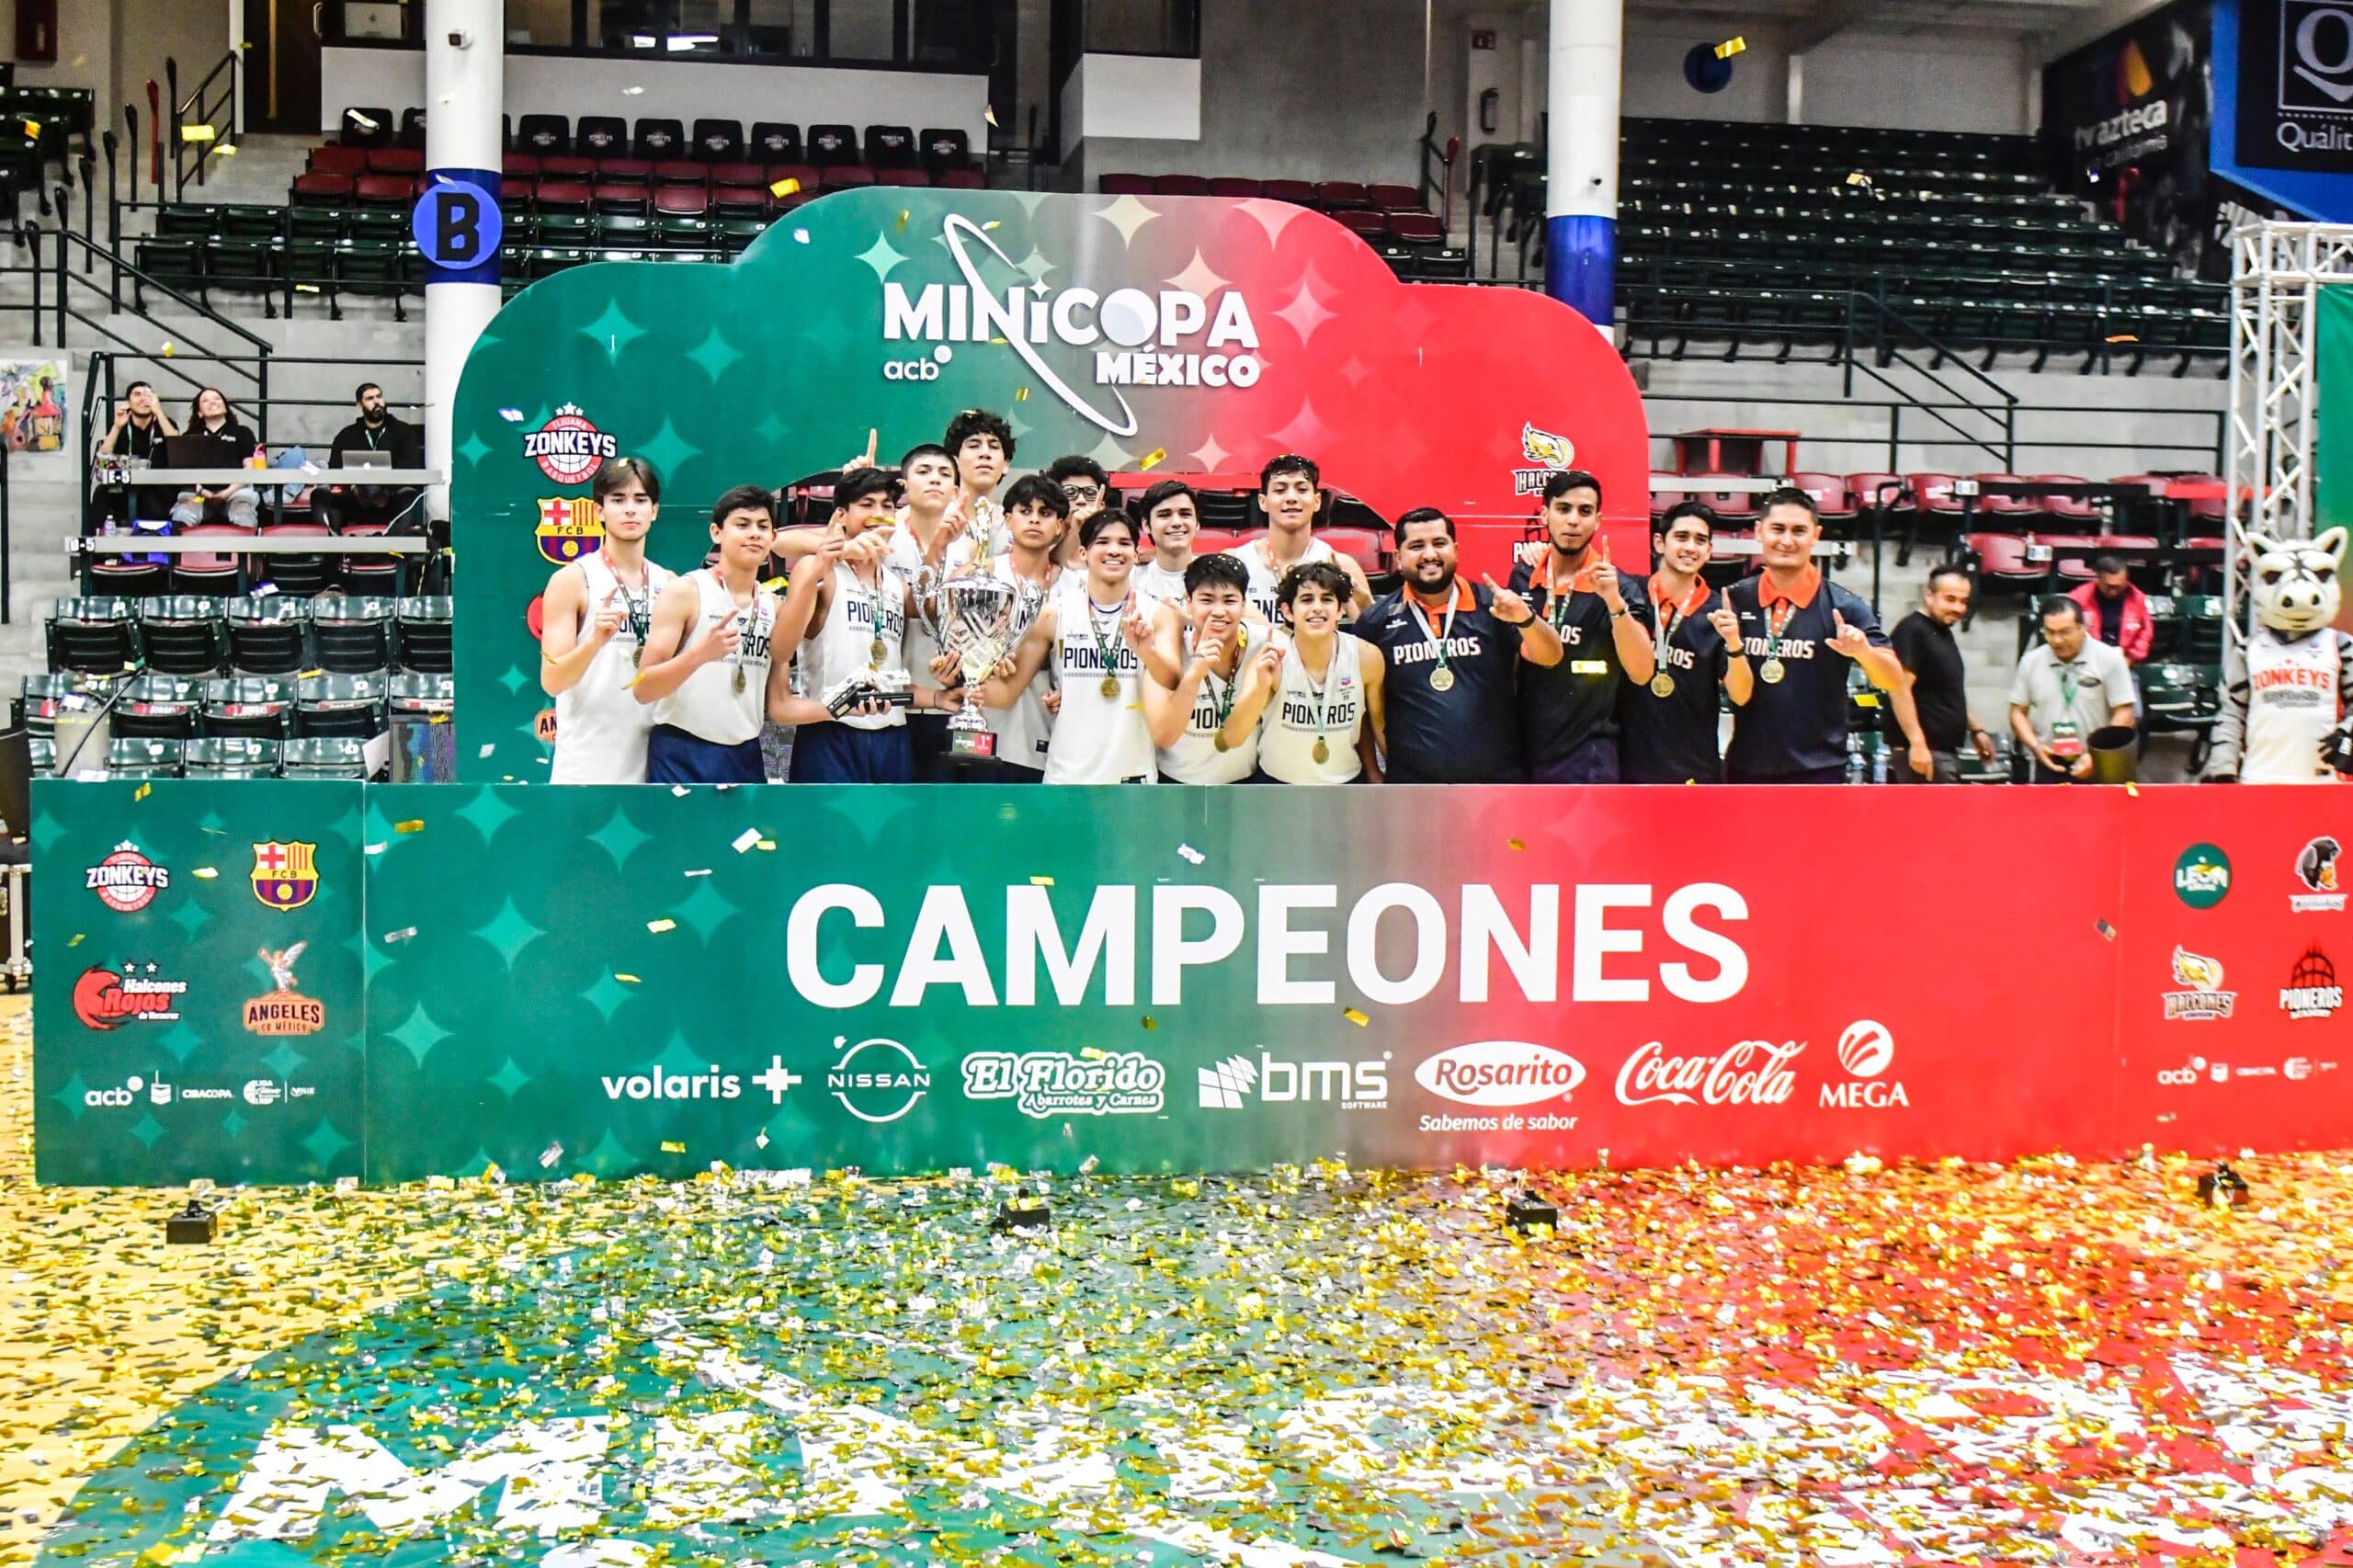 Pioneros Academy es campeón de la Minicopa México.